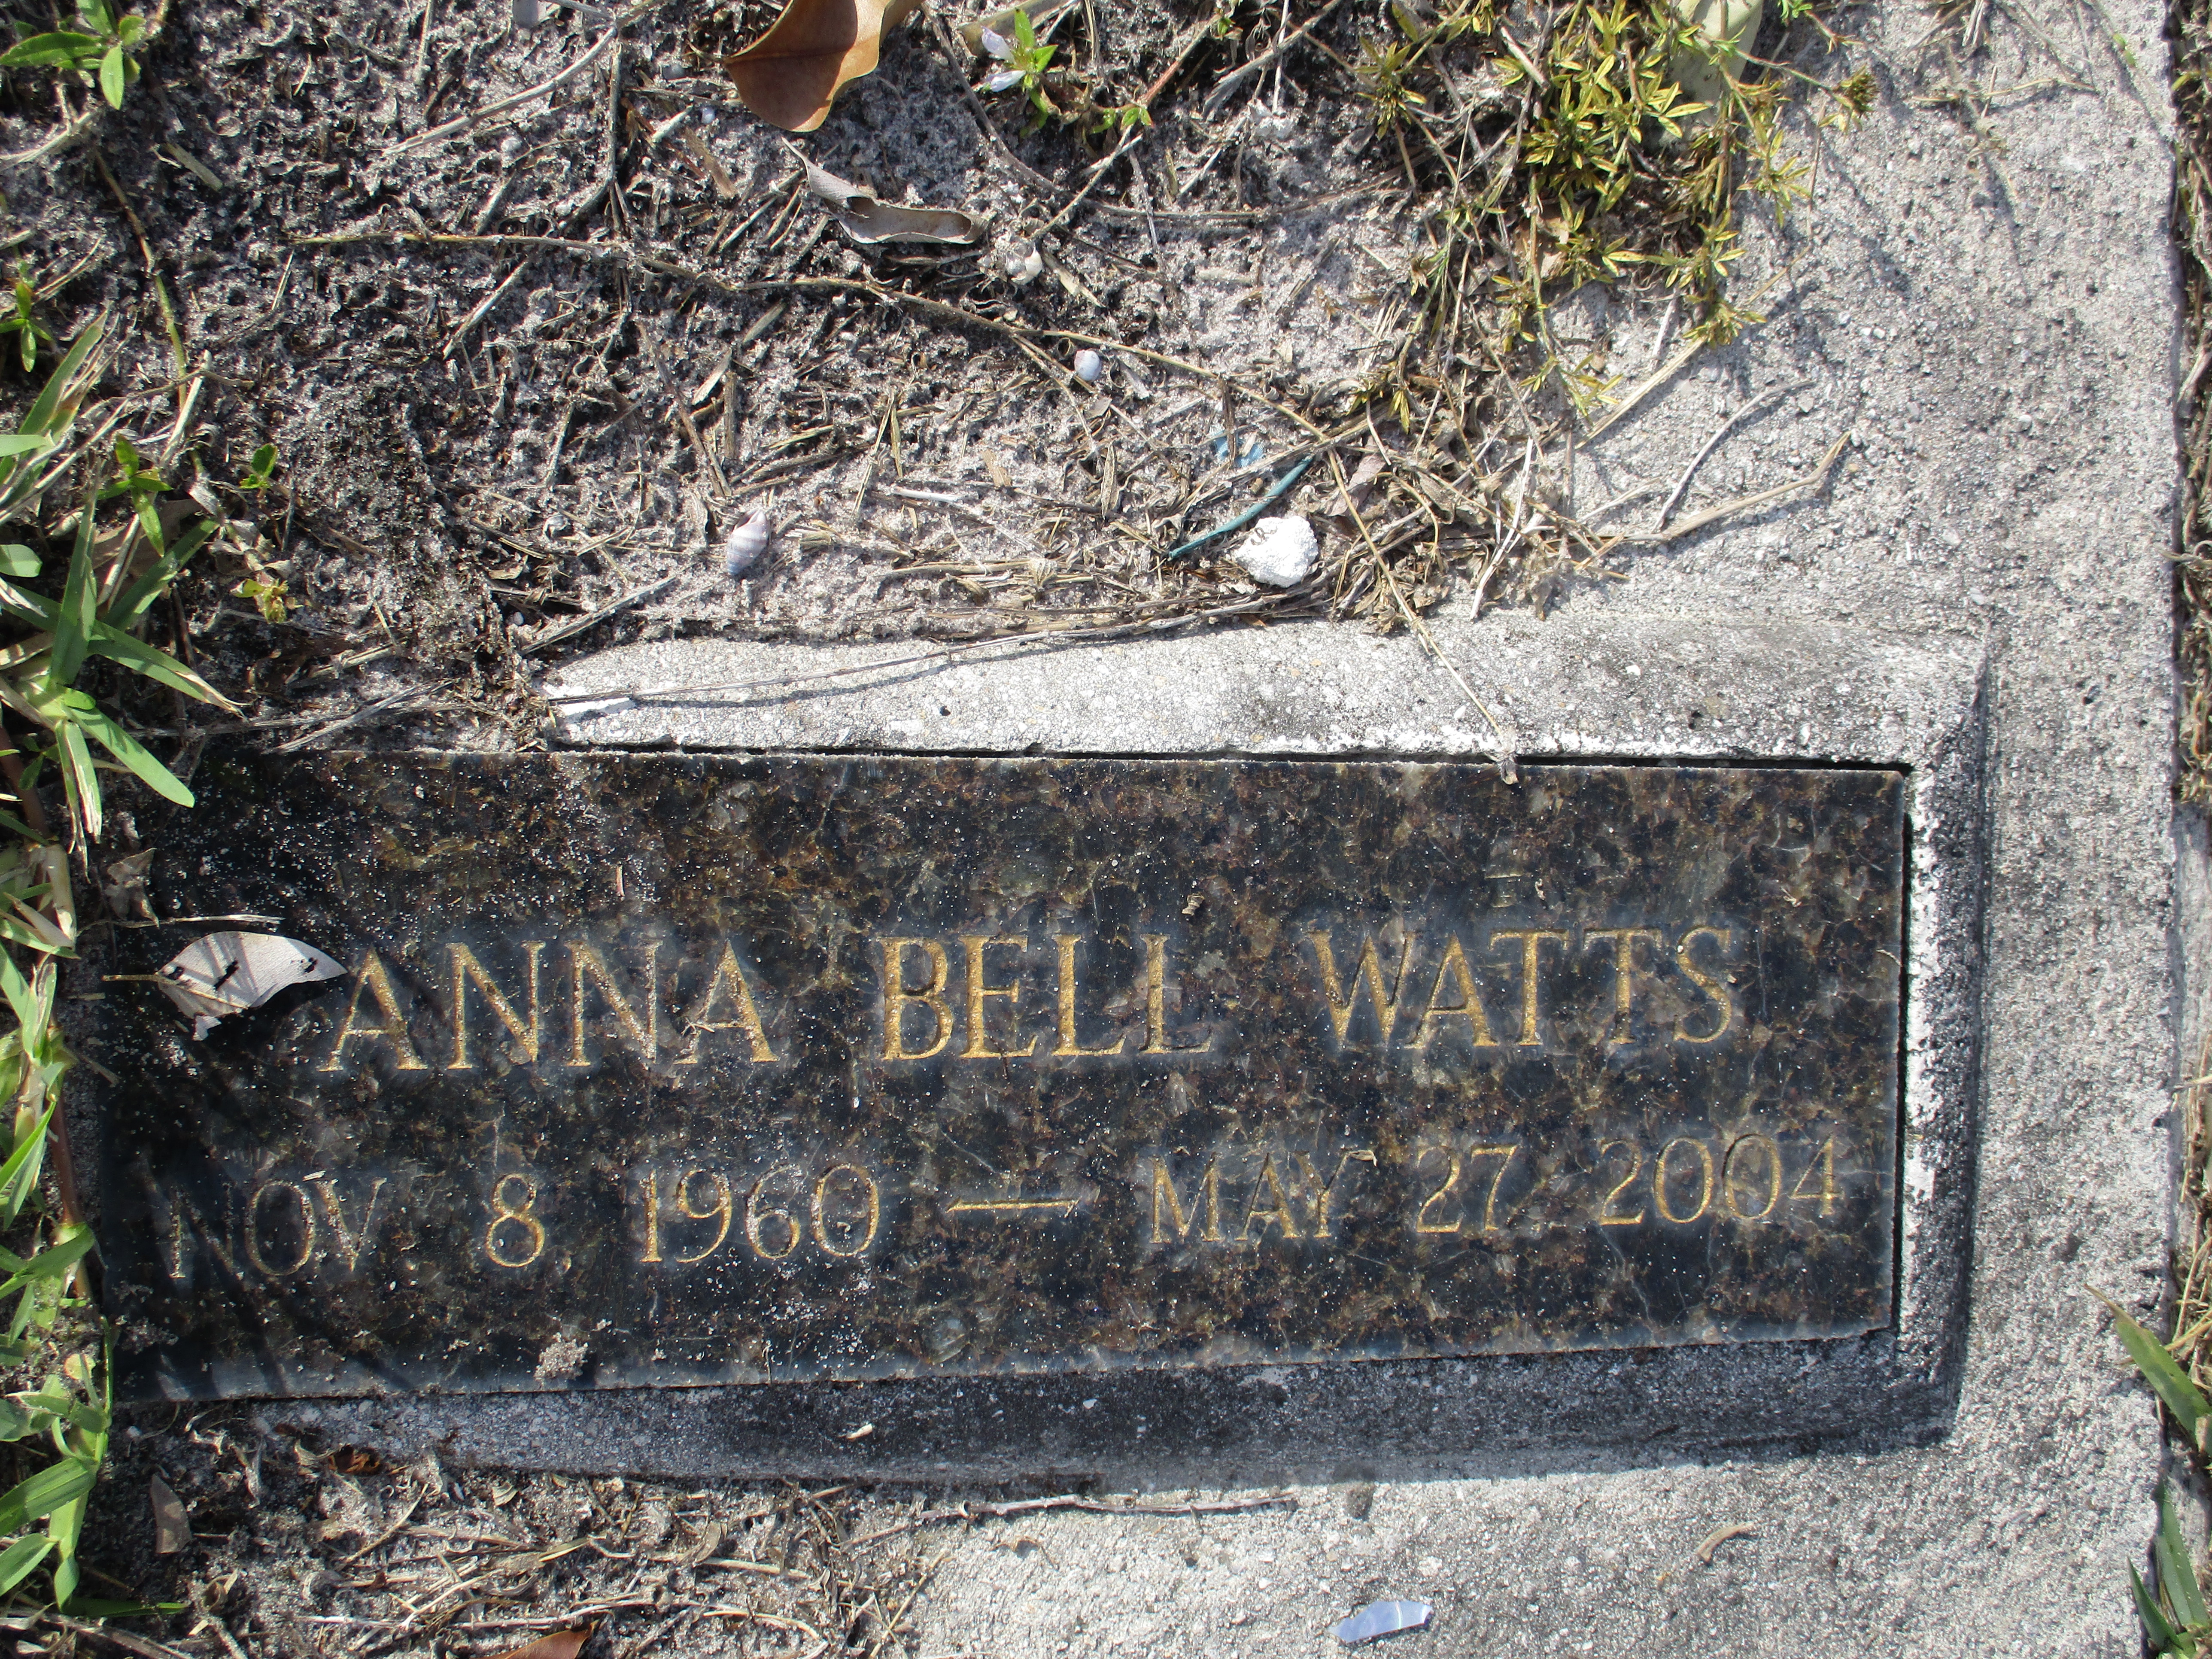 Anna Bell Watts